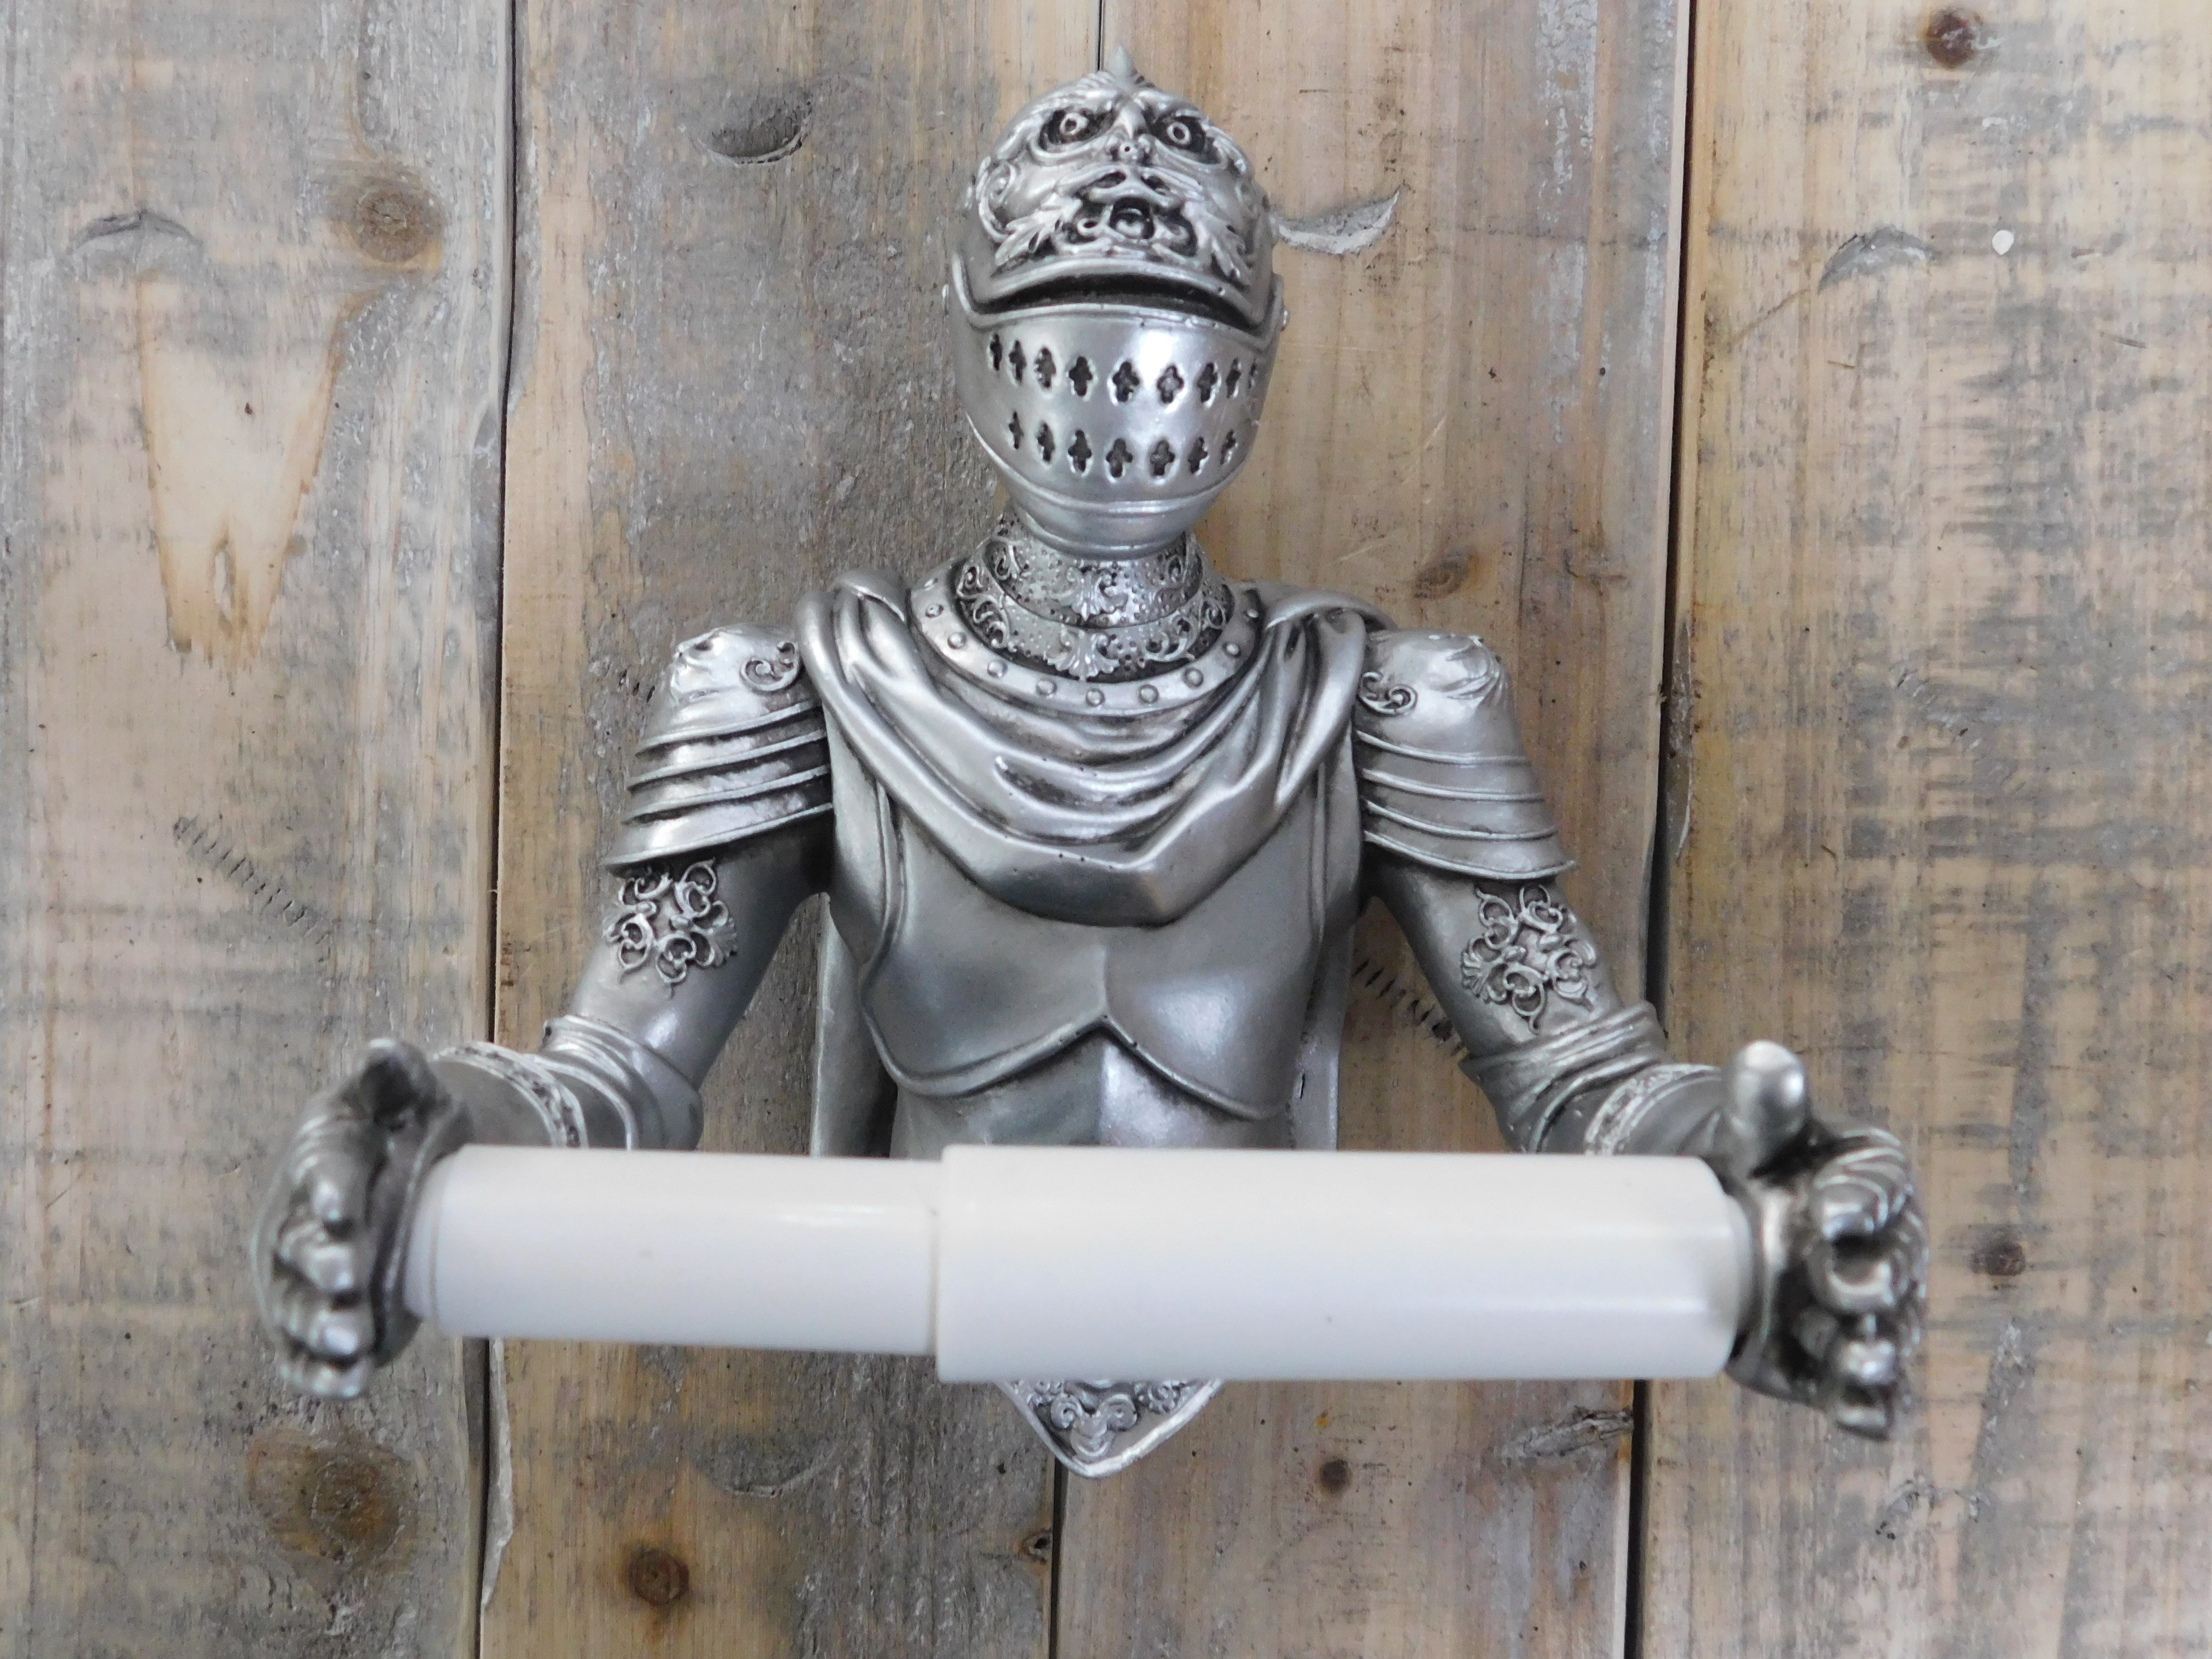 Een toiletrolhouder in de vorm van een ridder, leuke decoratie!